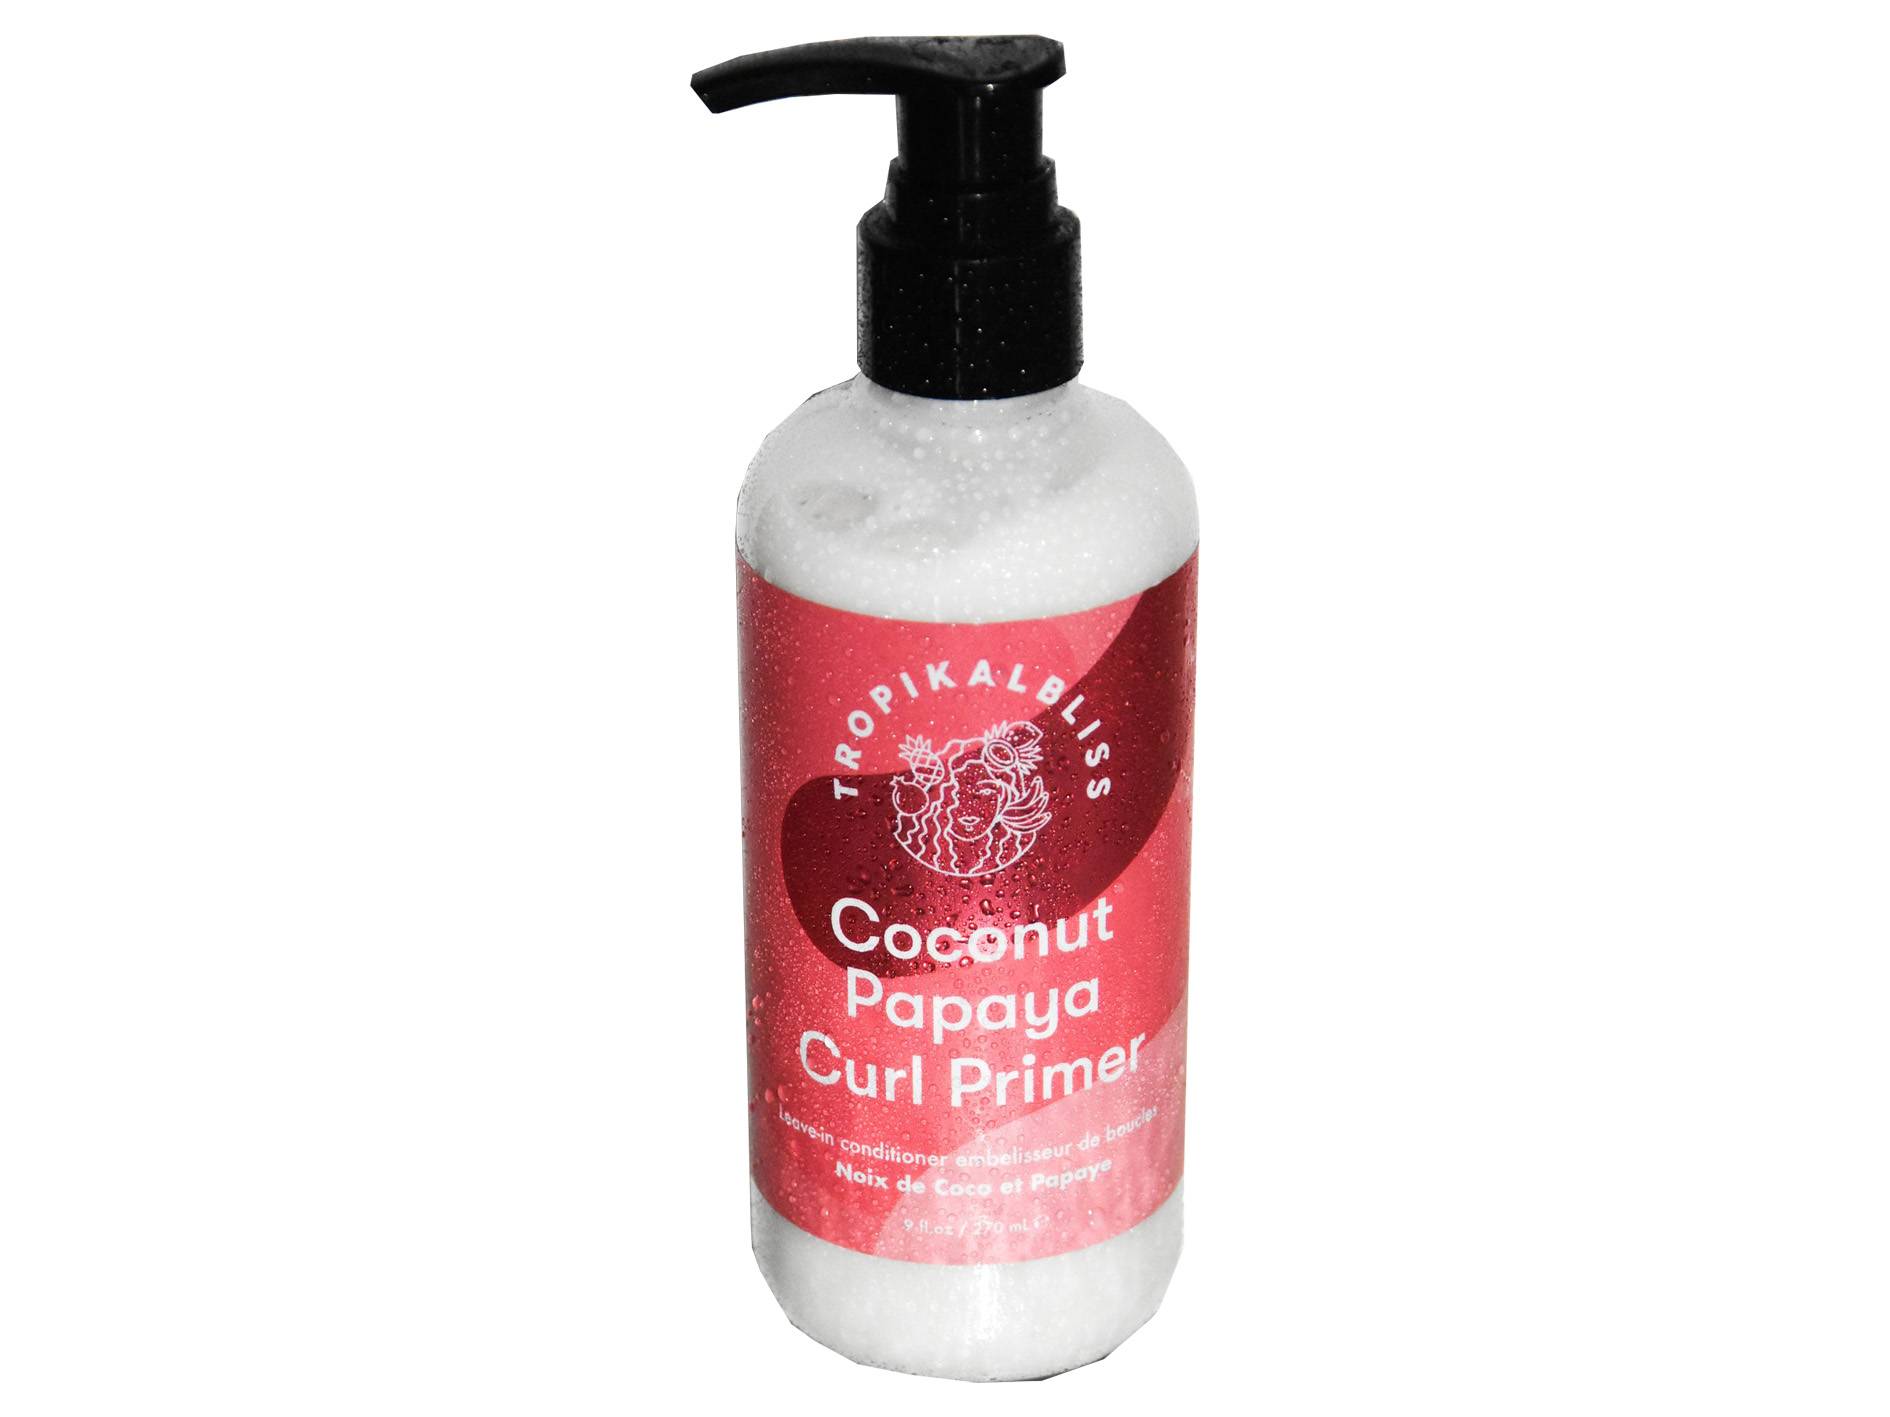 produit: Coconut Papaya Curl Primer